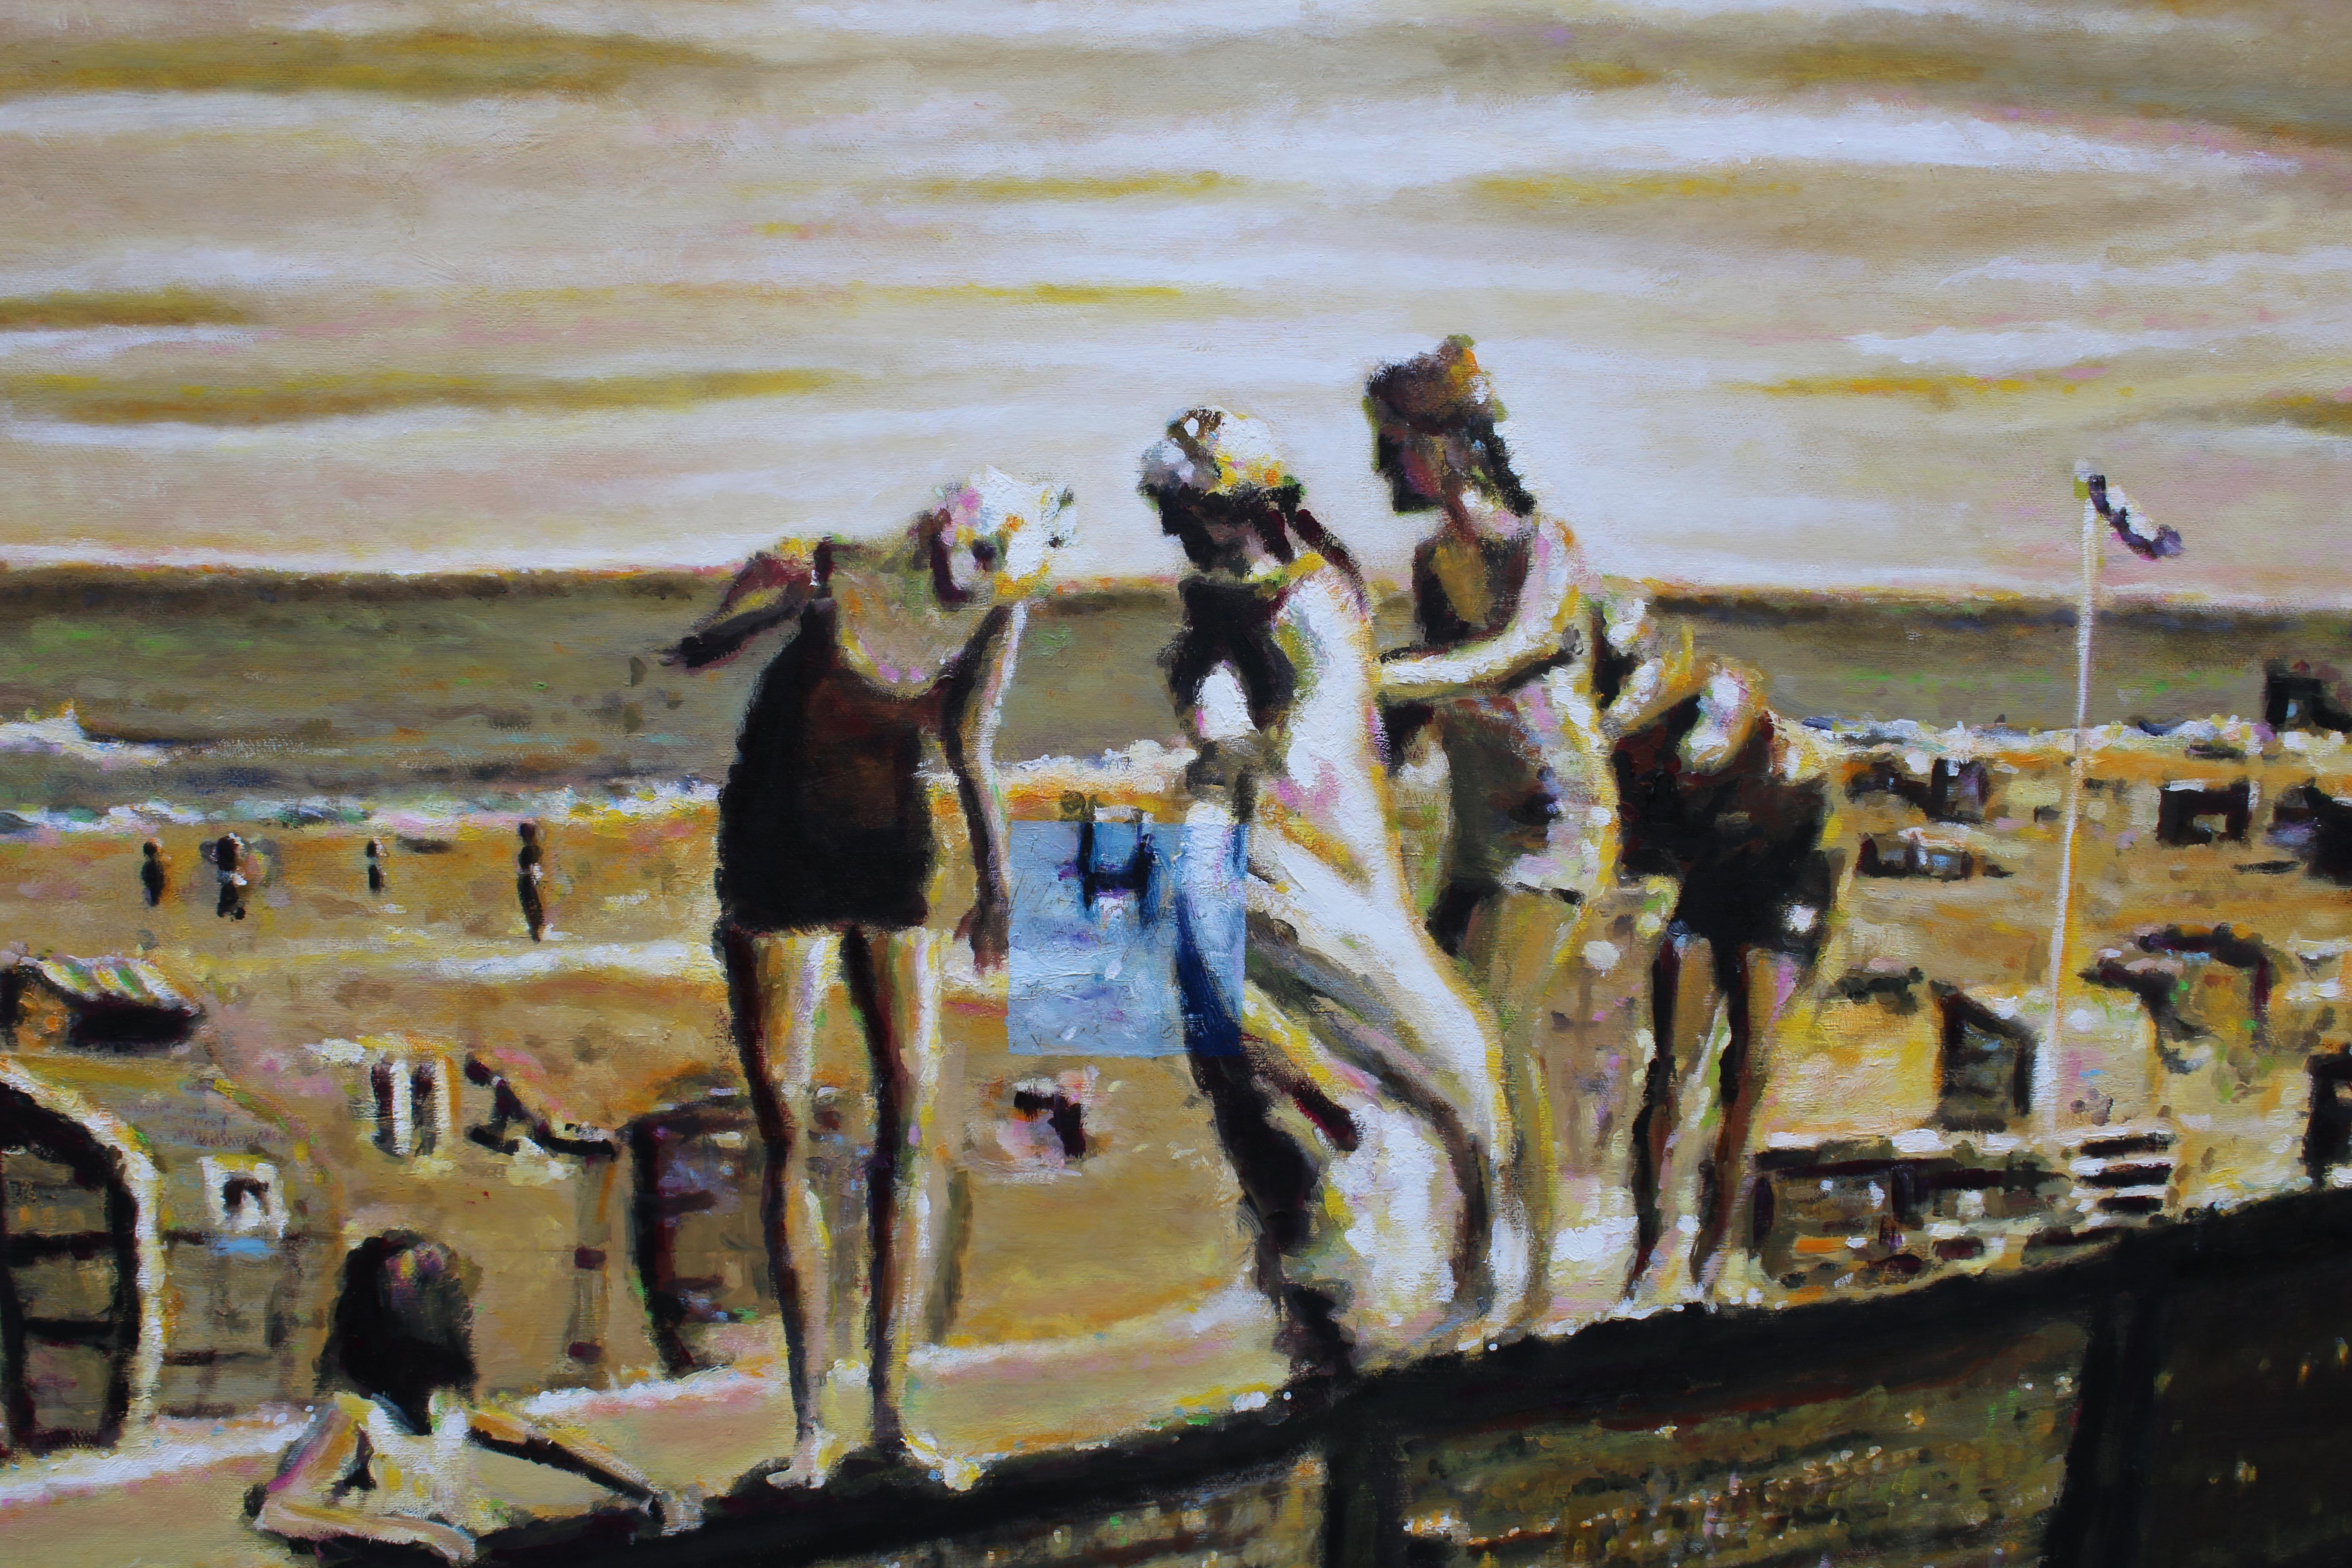 Heaven Can Wait - scène de danse contemporaine sur plage - peinture de paysage figurative - Marron Figurative Painting par Michael Pröpper